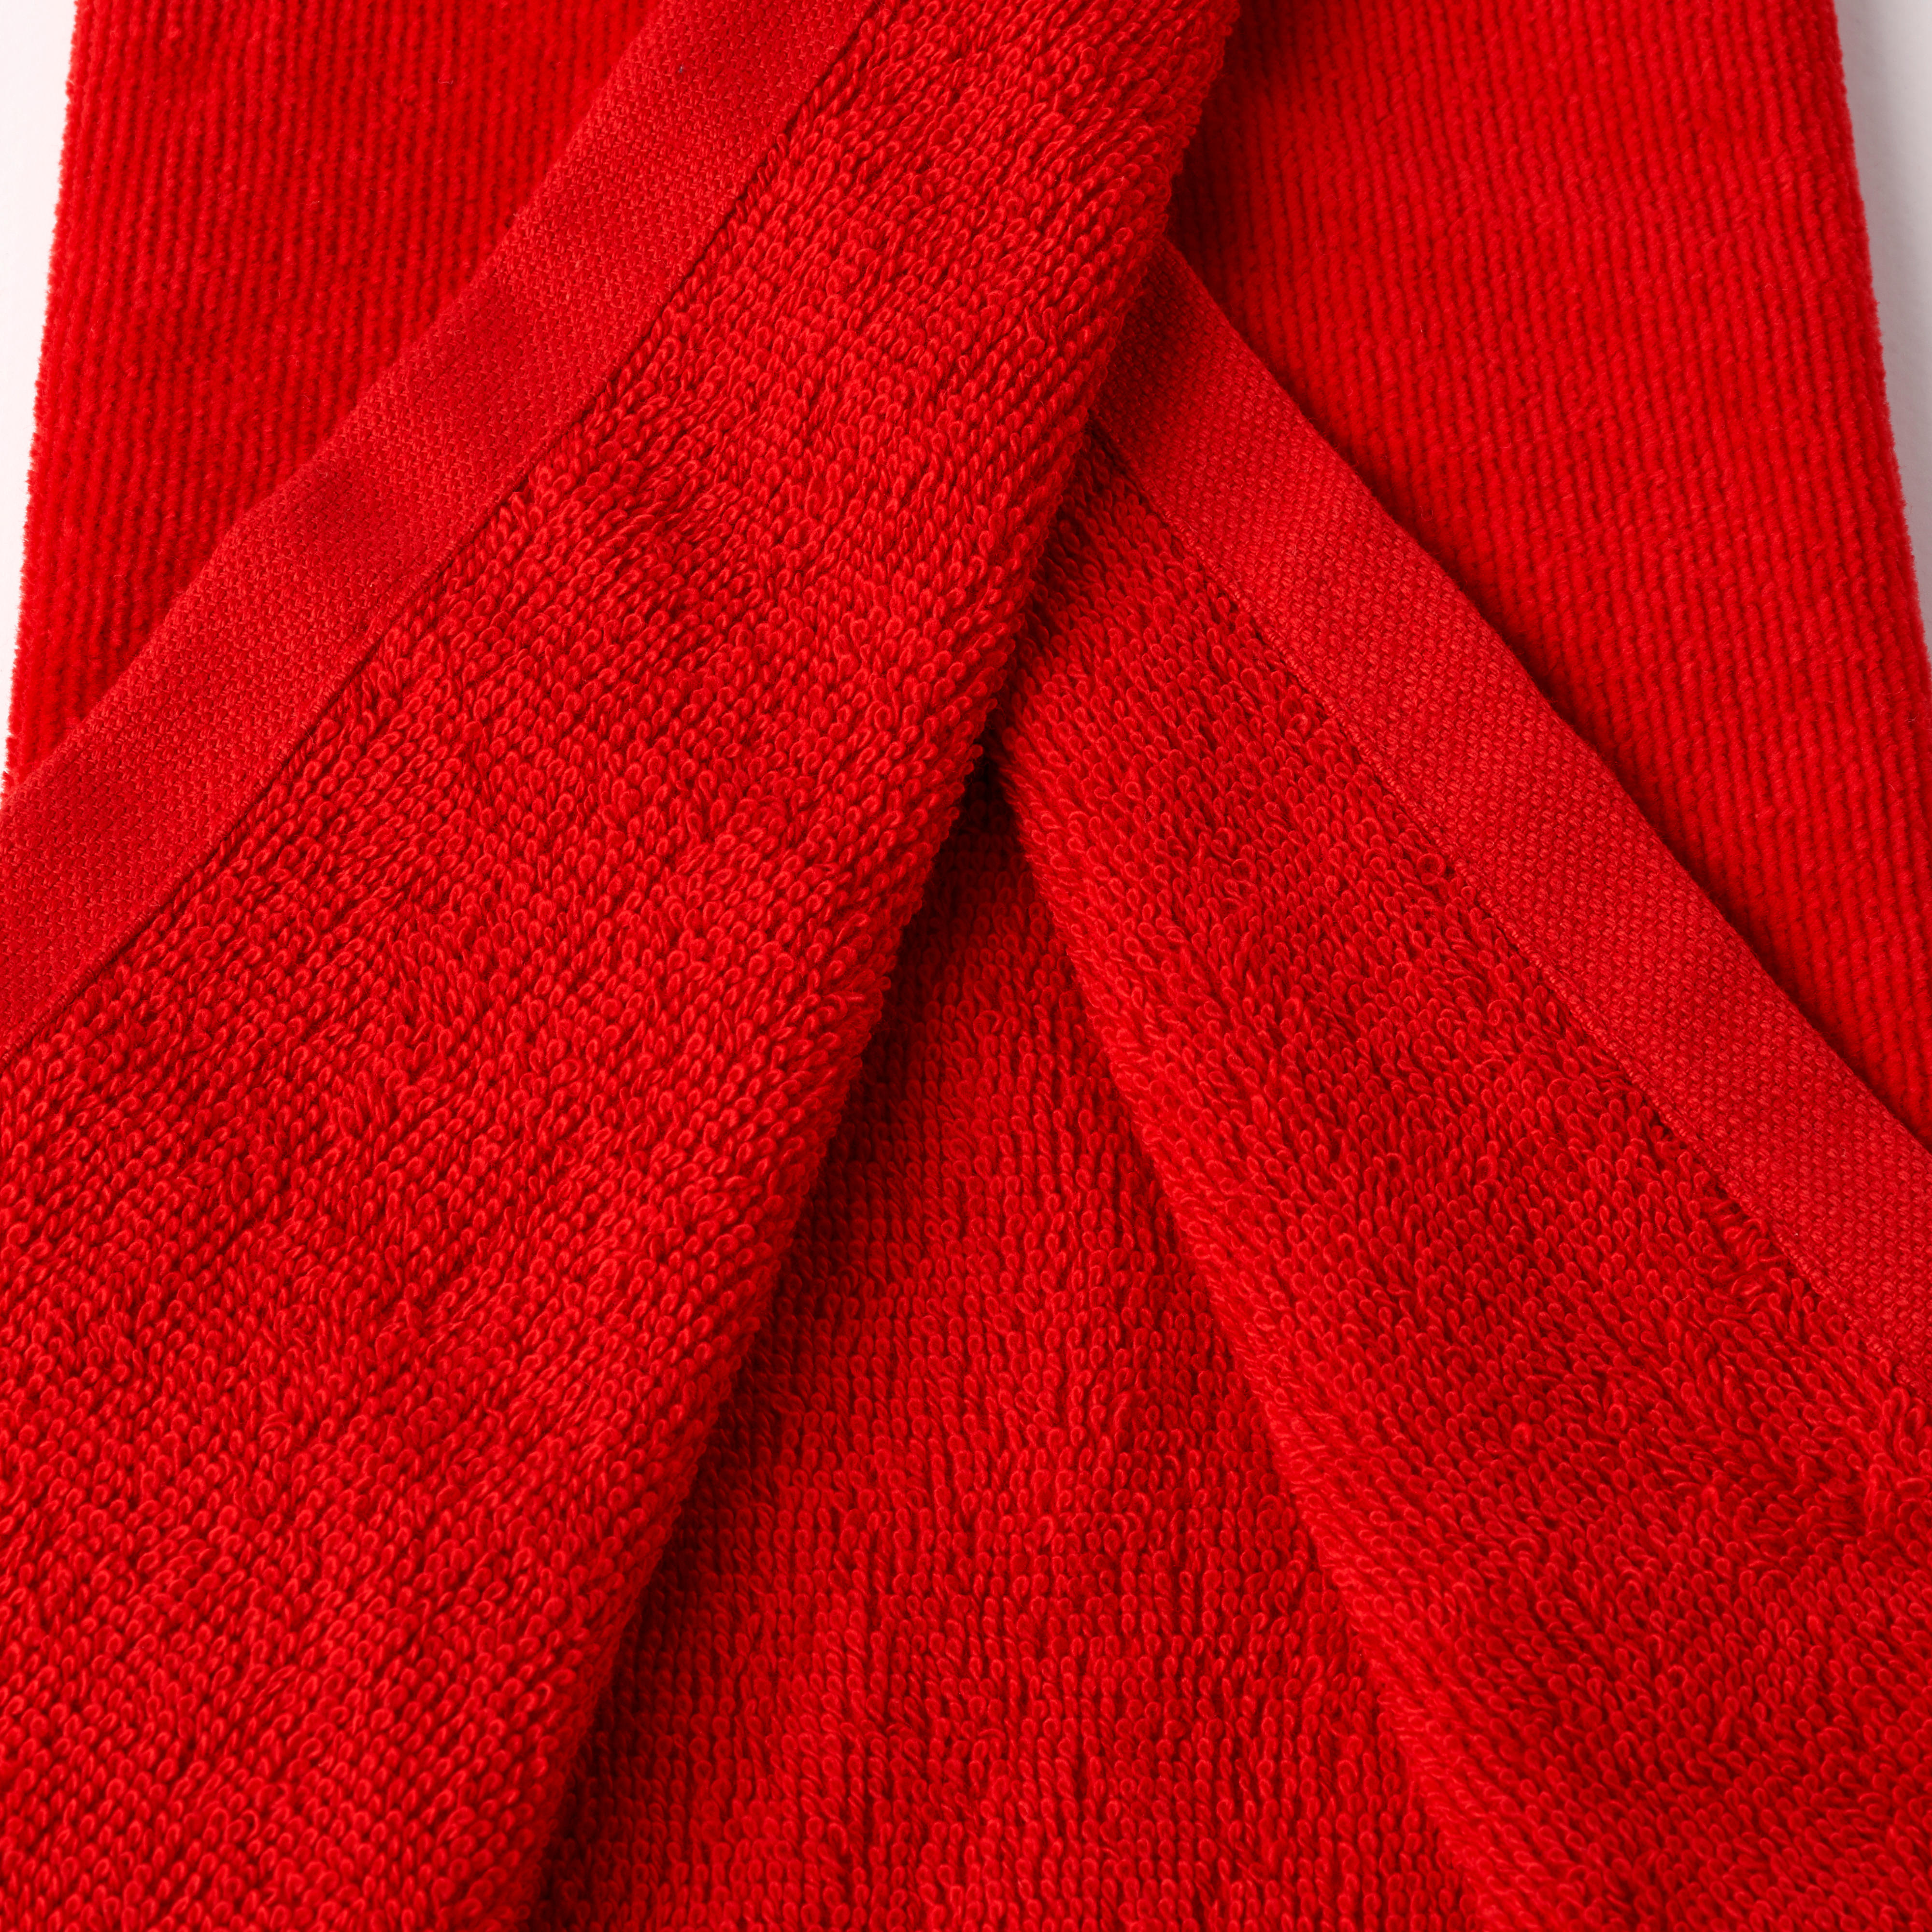 Tri-Fold Golf Towel - Inesis Red - INESIS